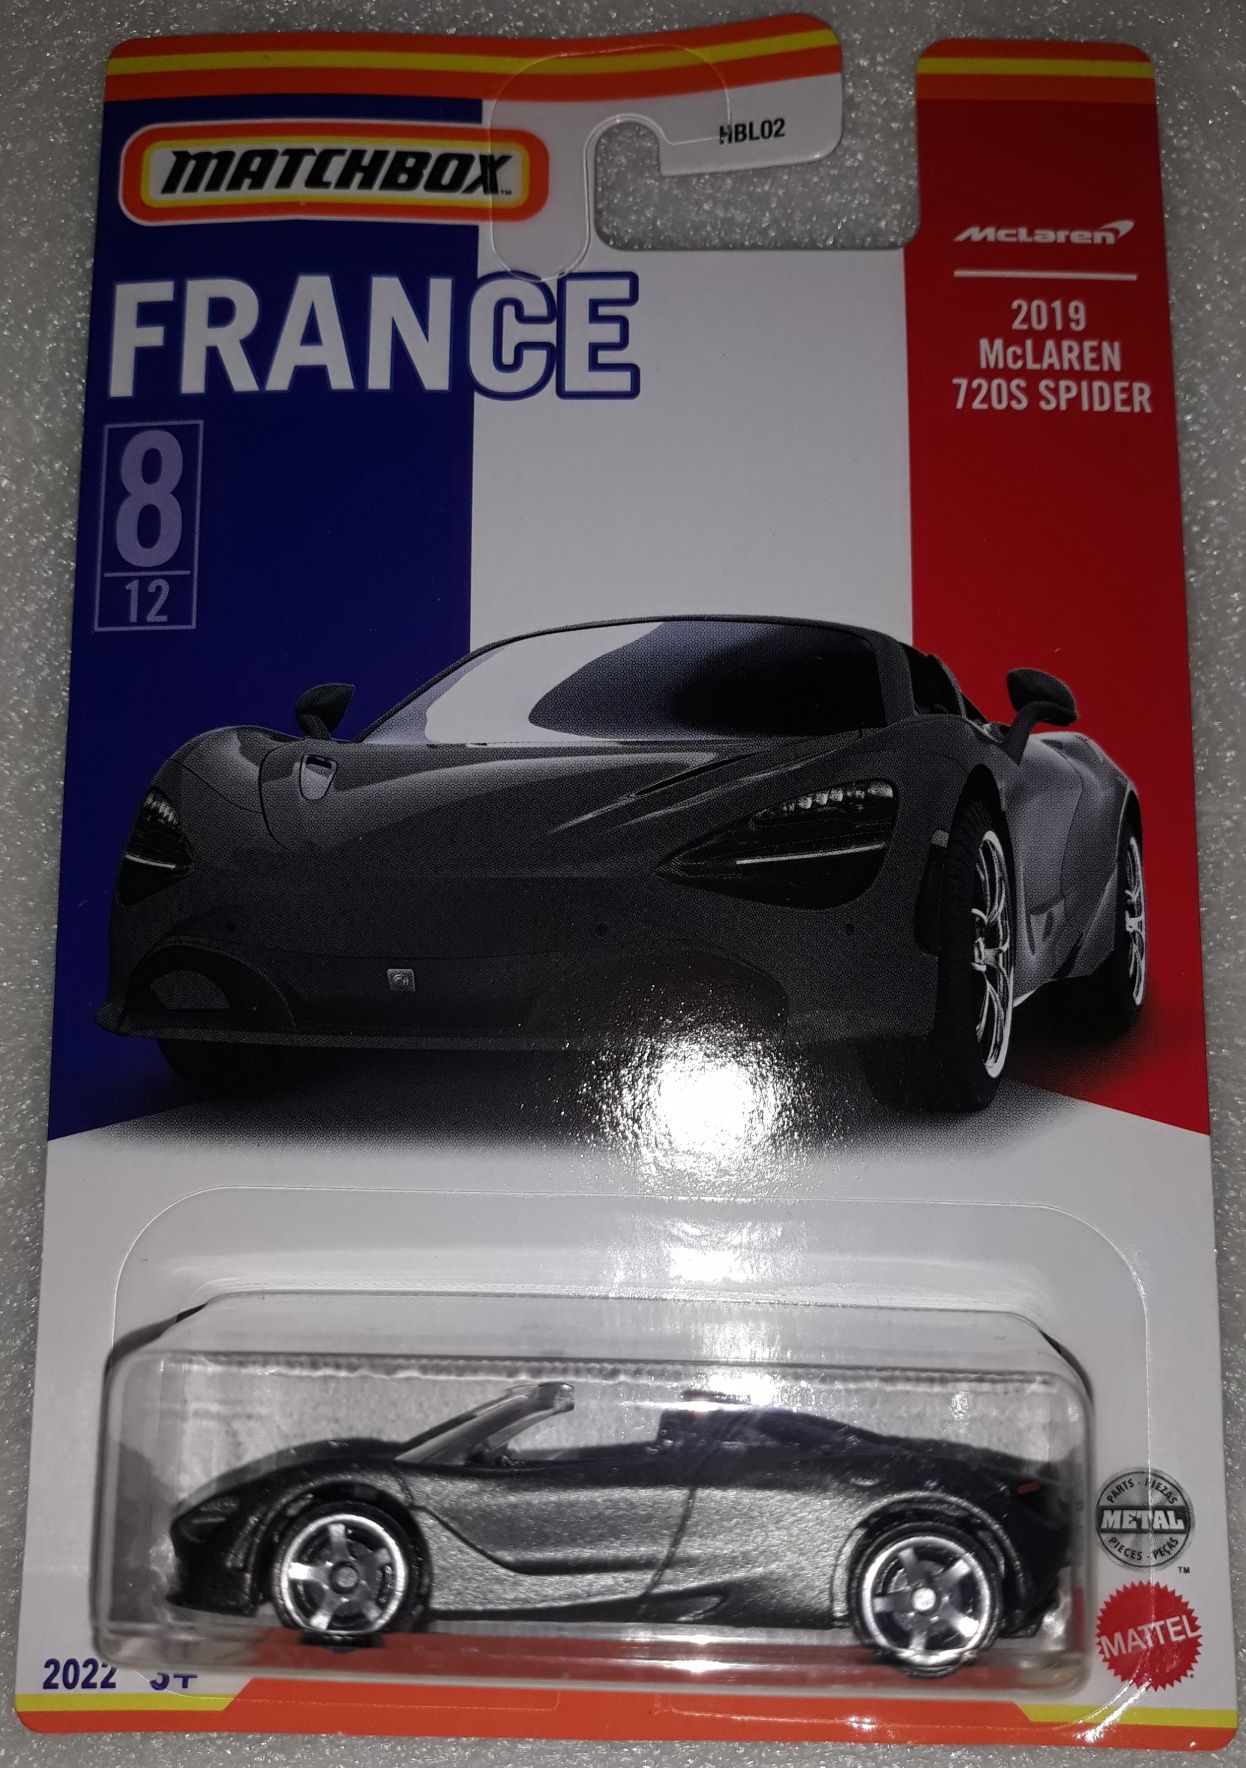 Matchbox 2019 McLaren 720S Spider France Francja